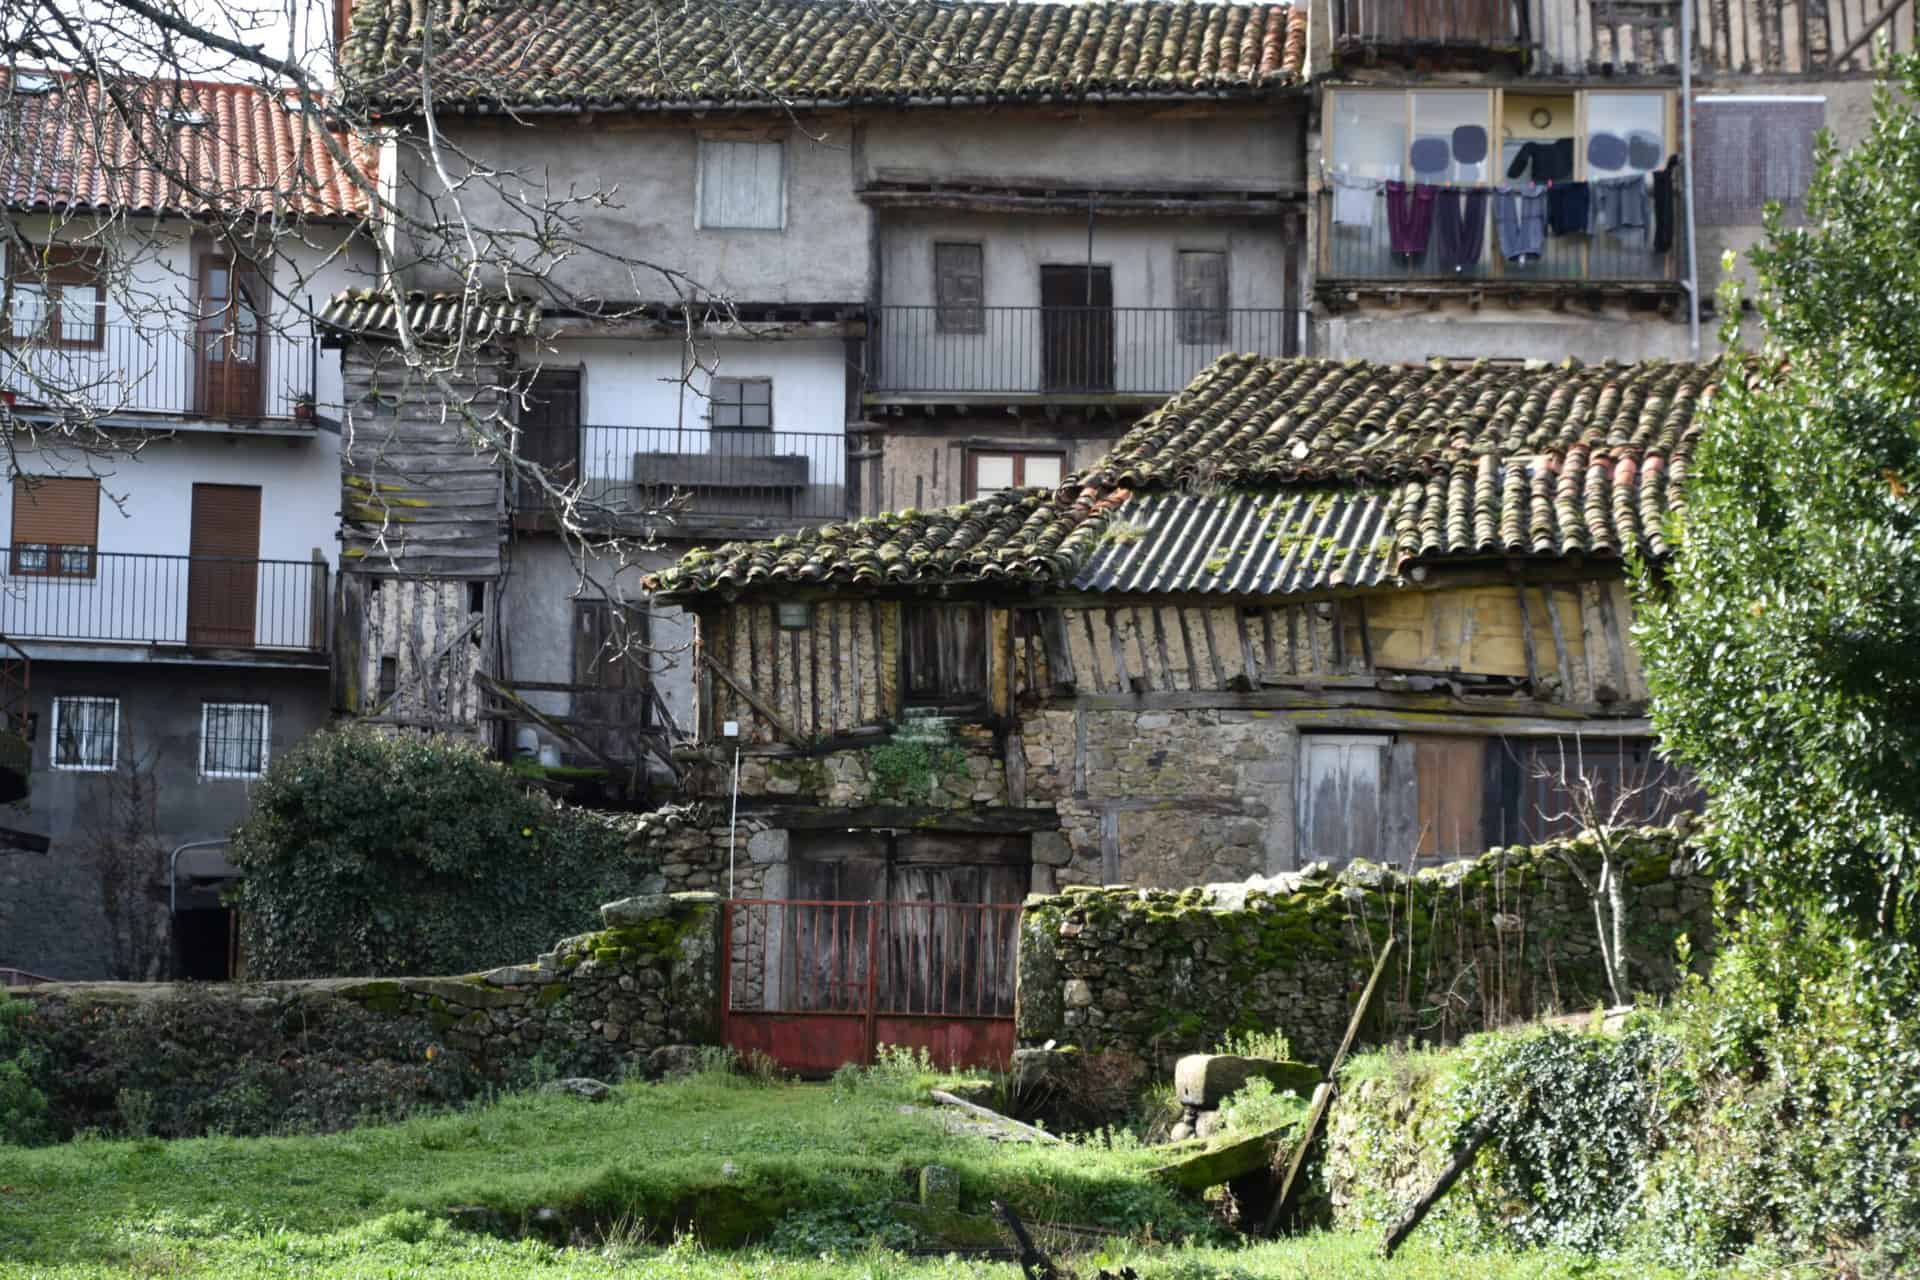 La Alberca, a village in Sierra de Francia in Spain